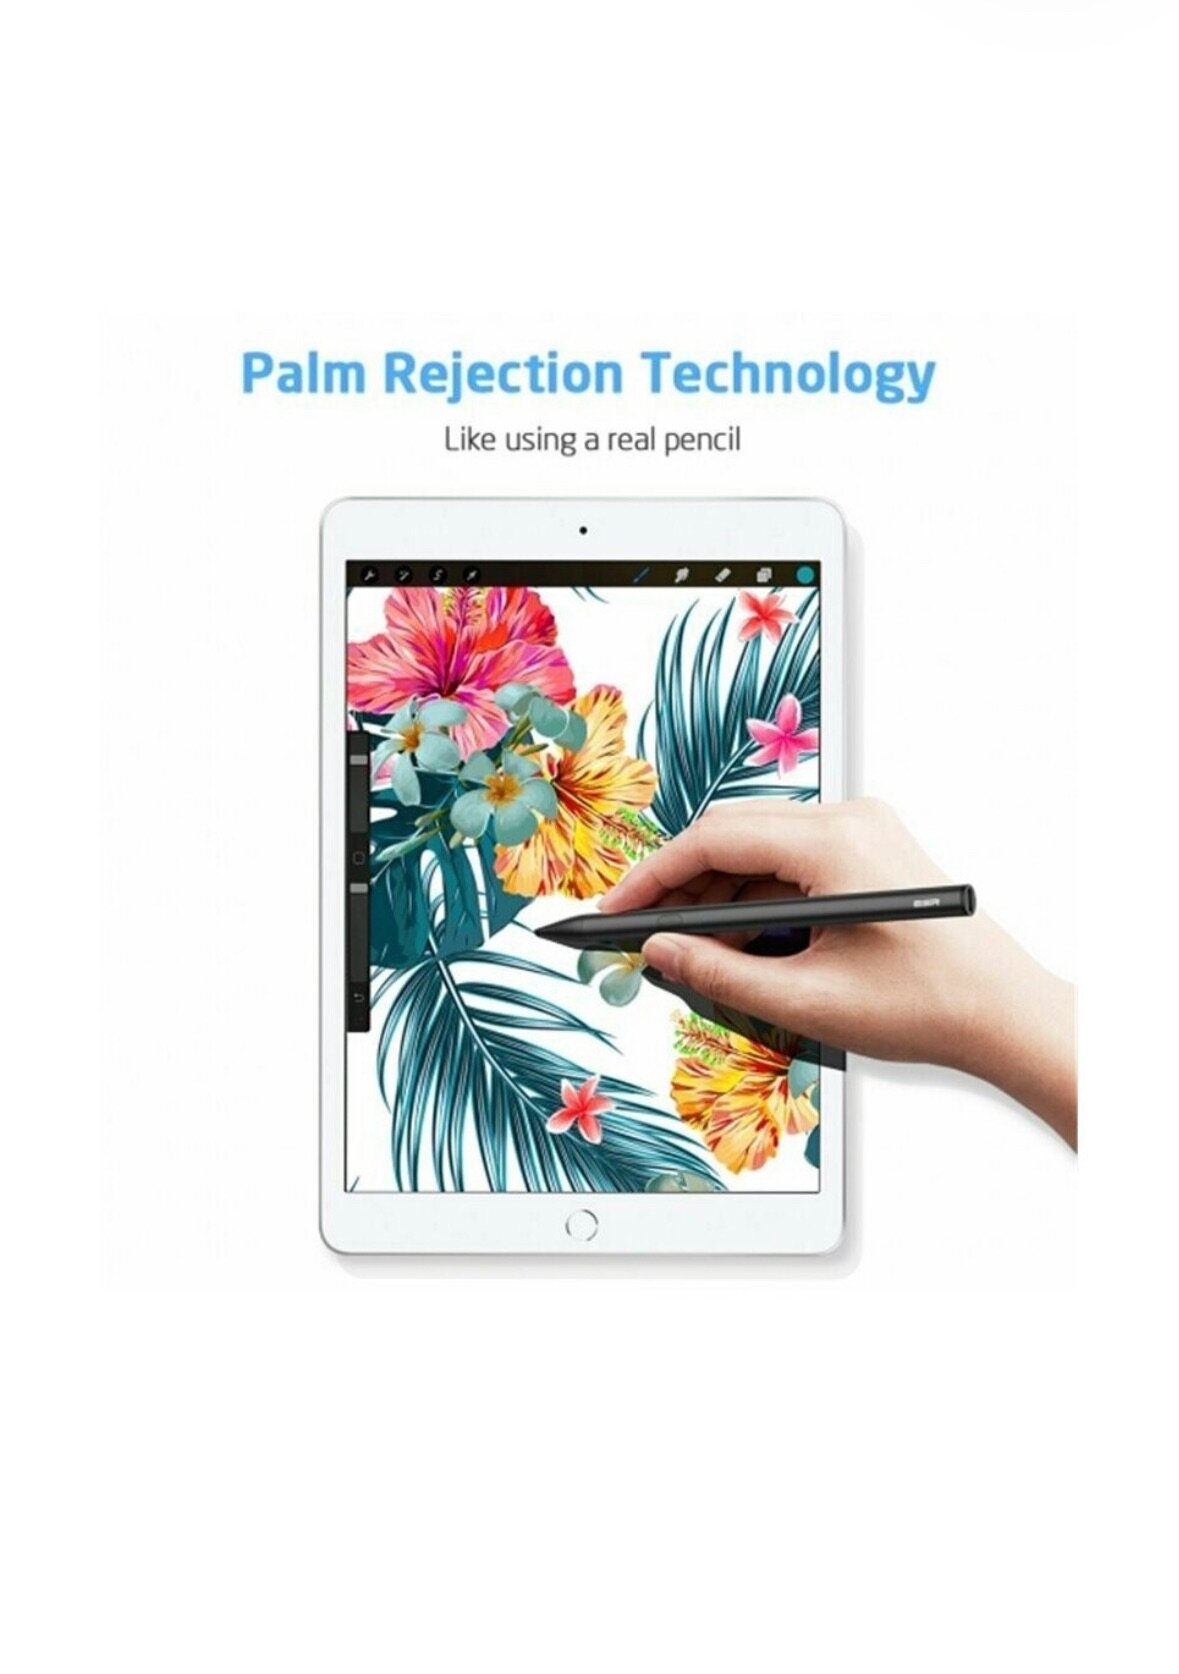 Стилус для iPad (от 2018 г и выше) ESR Digital Pencil Magnetic белый